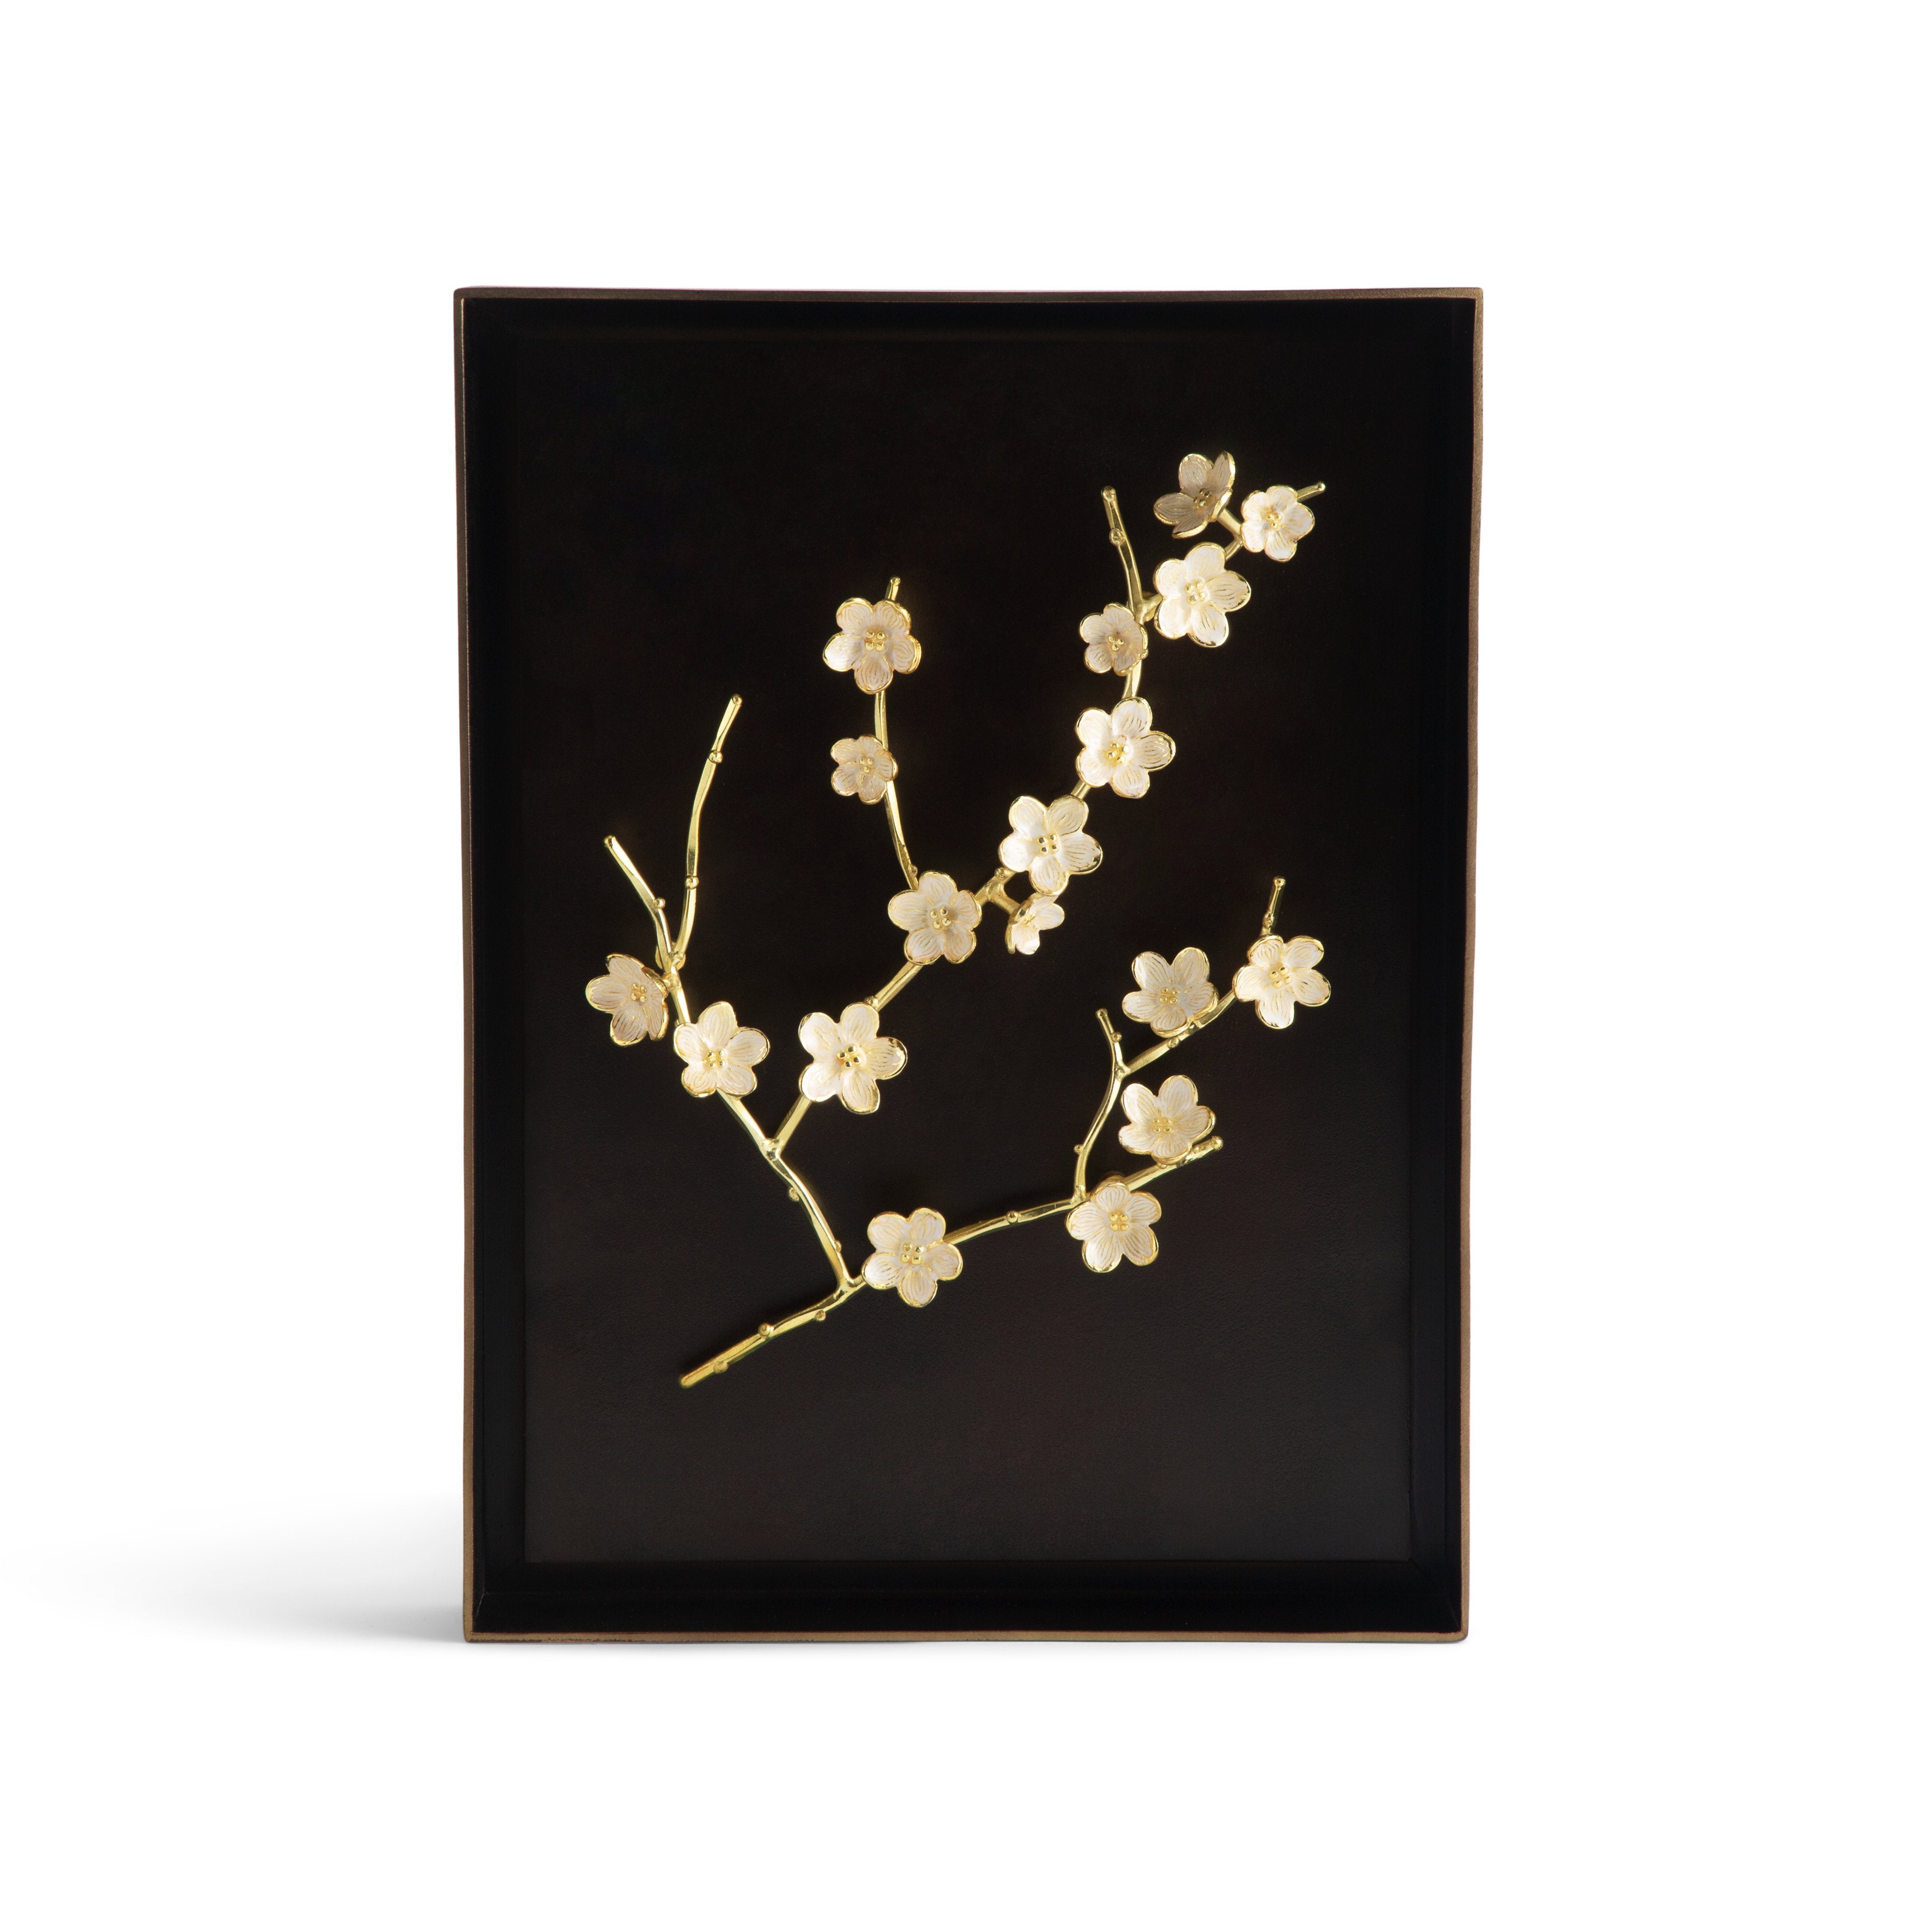 Michael Aram Cherry Blossom Shadow Box